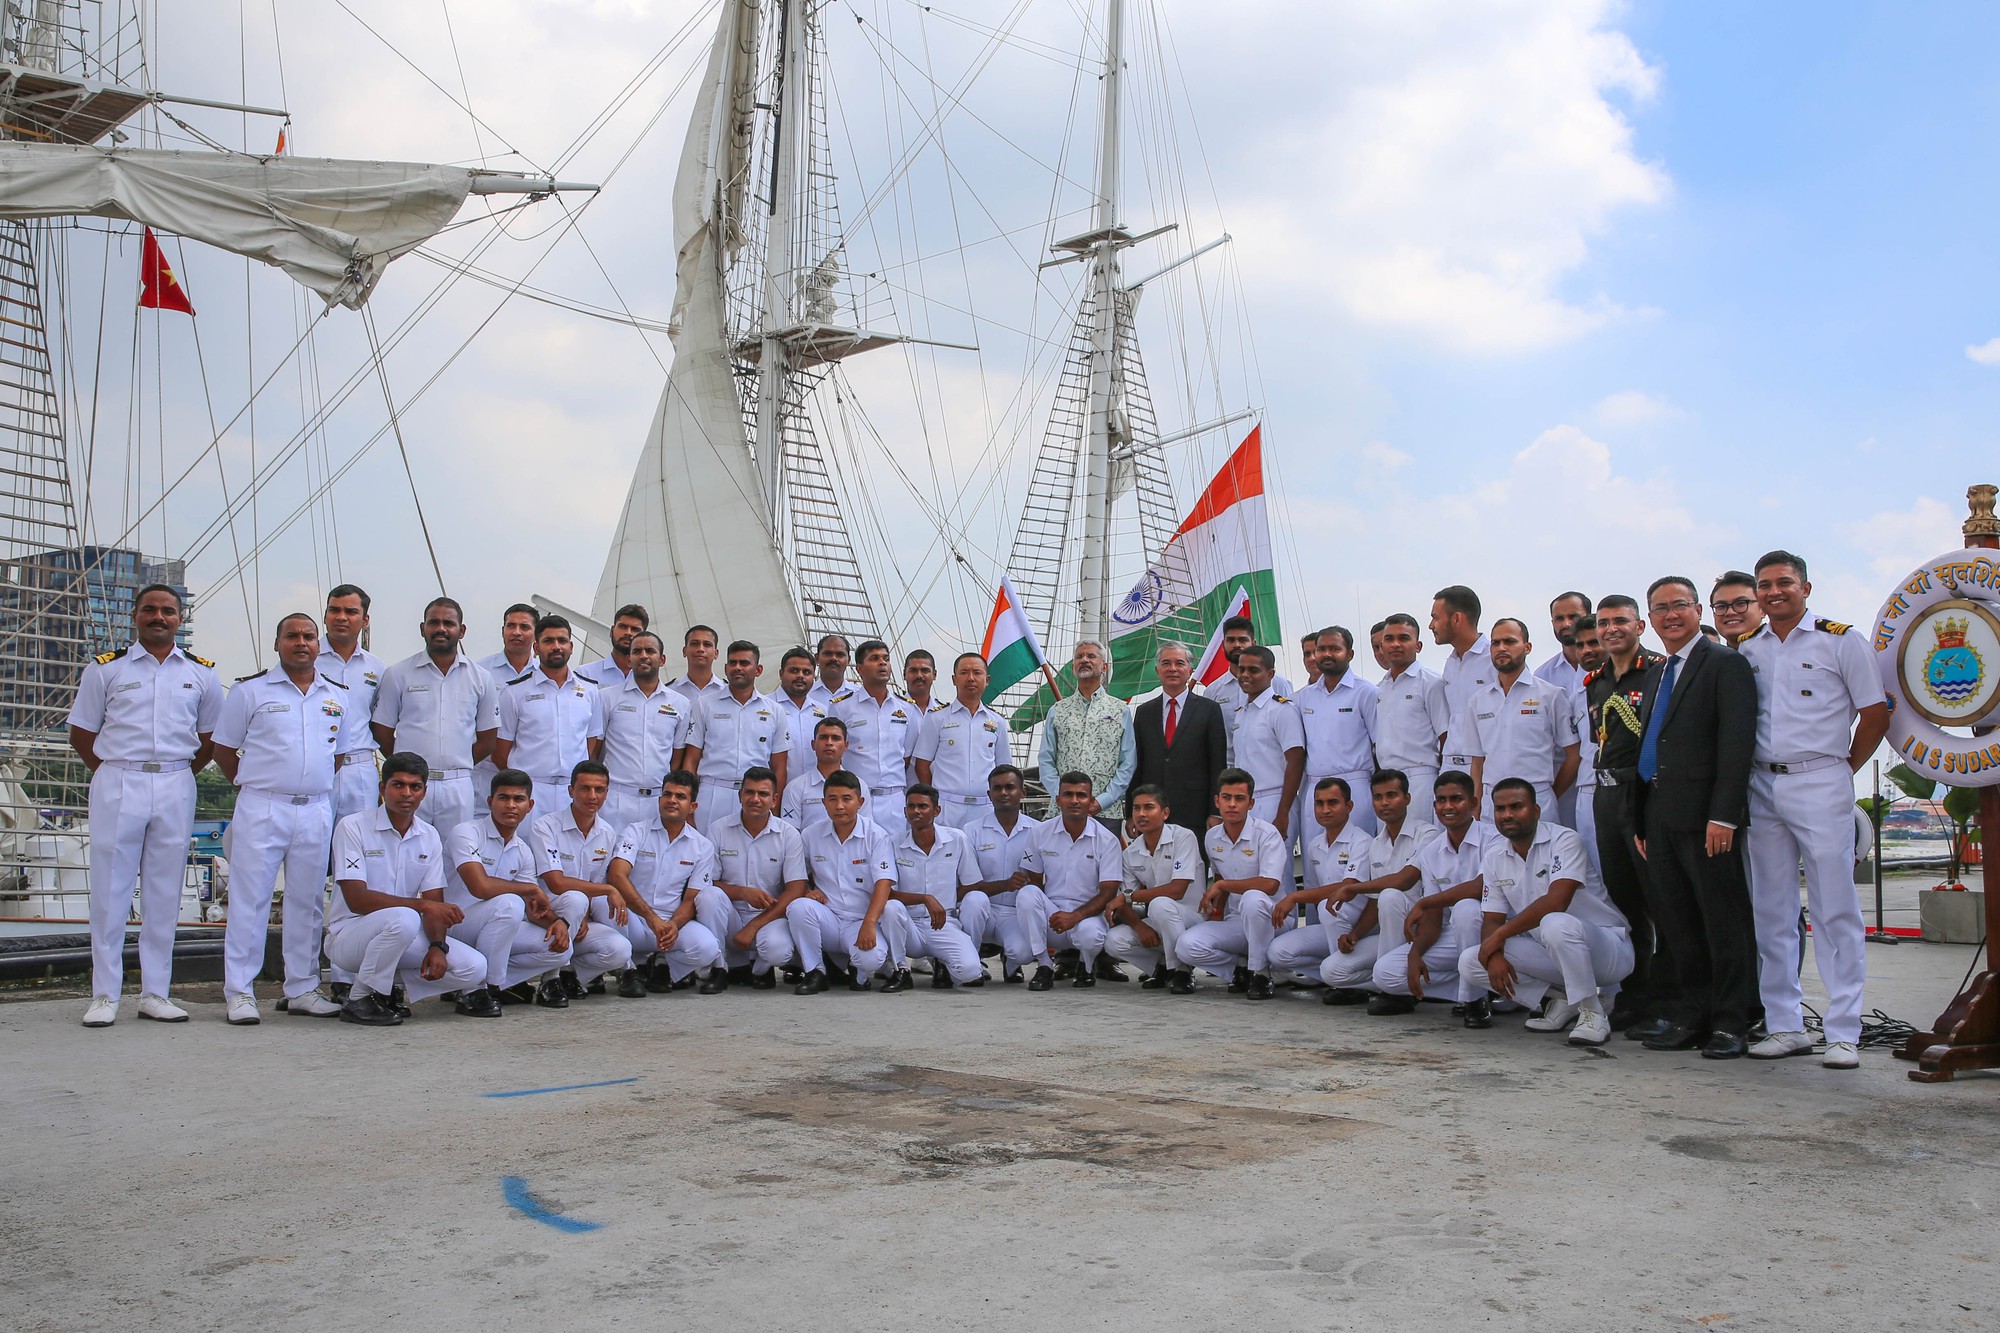 Tàu buồm Hải quân Ấn Độ Sudarshini thăm TP HCM - Ảnh 7.